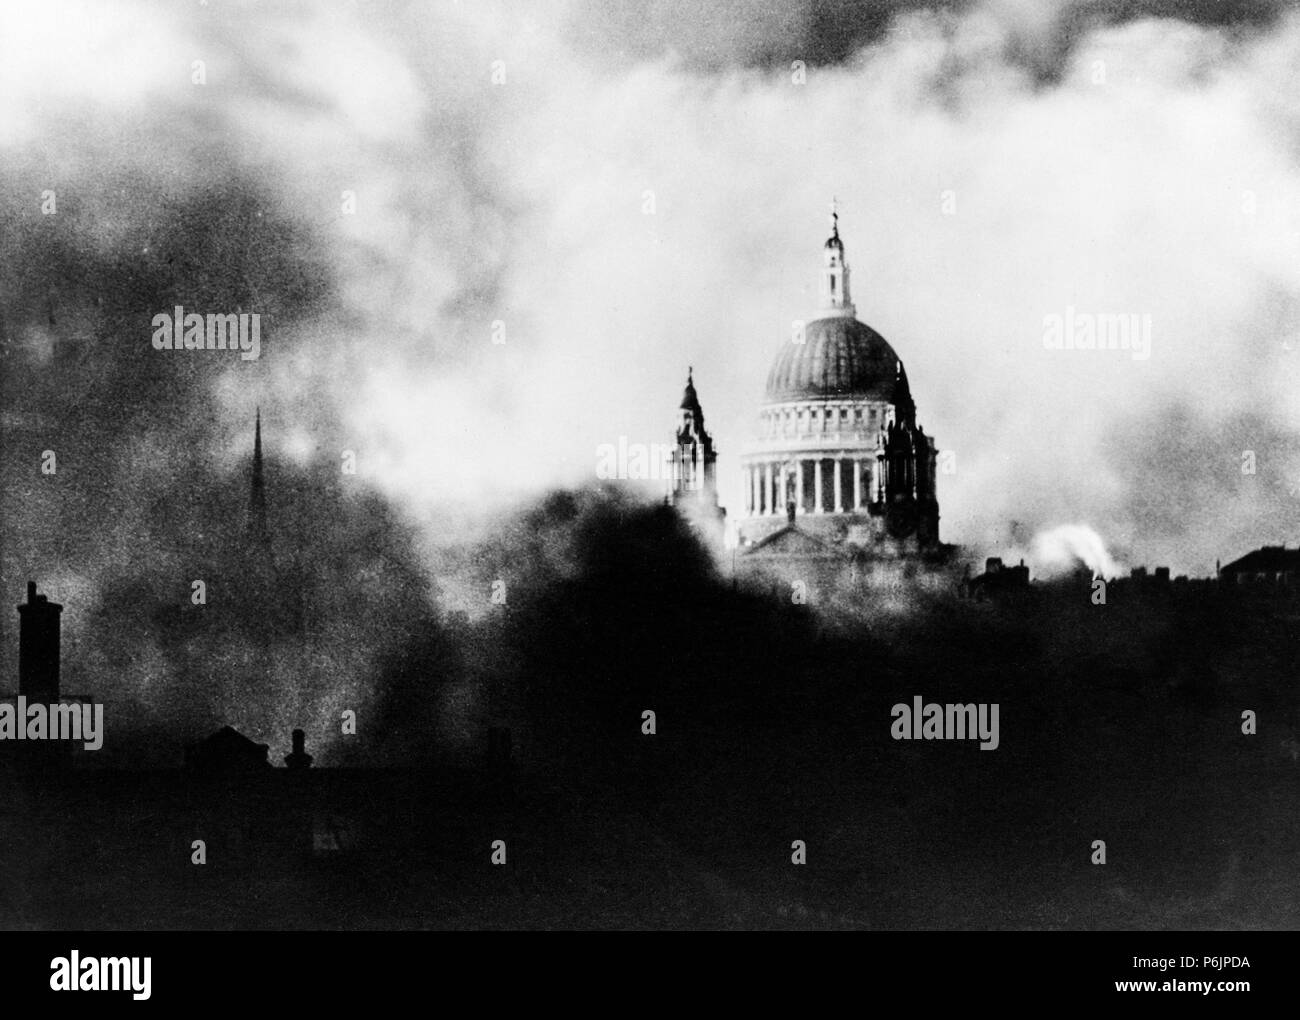 La Cathédrale St Paul à Londres, entouré par la fumée et les incendies pendant le blitz de la Luftwaffe pendant la Seconde Guerre mondiale en 1940. Banque D'Images